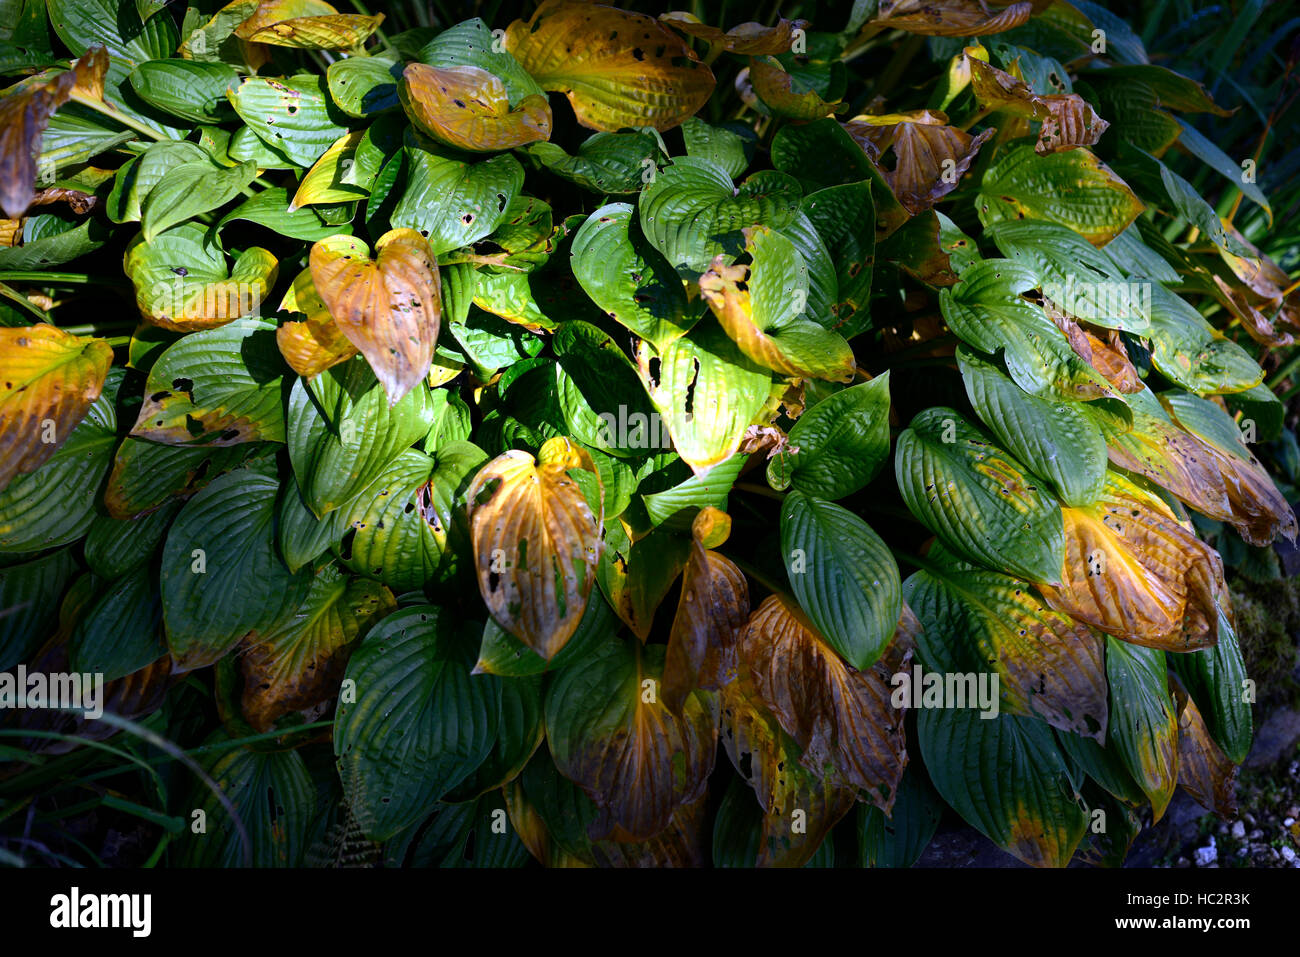 Hosta Laub Blätter Herbst Ende Sommer fleckige Schaden beschädigt Farbe Farbwechsel ändern Schatten schattige RM-Floral Schatten Stockfoto